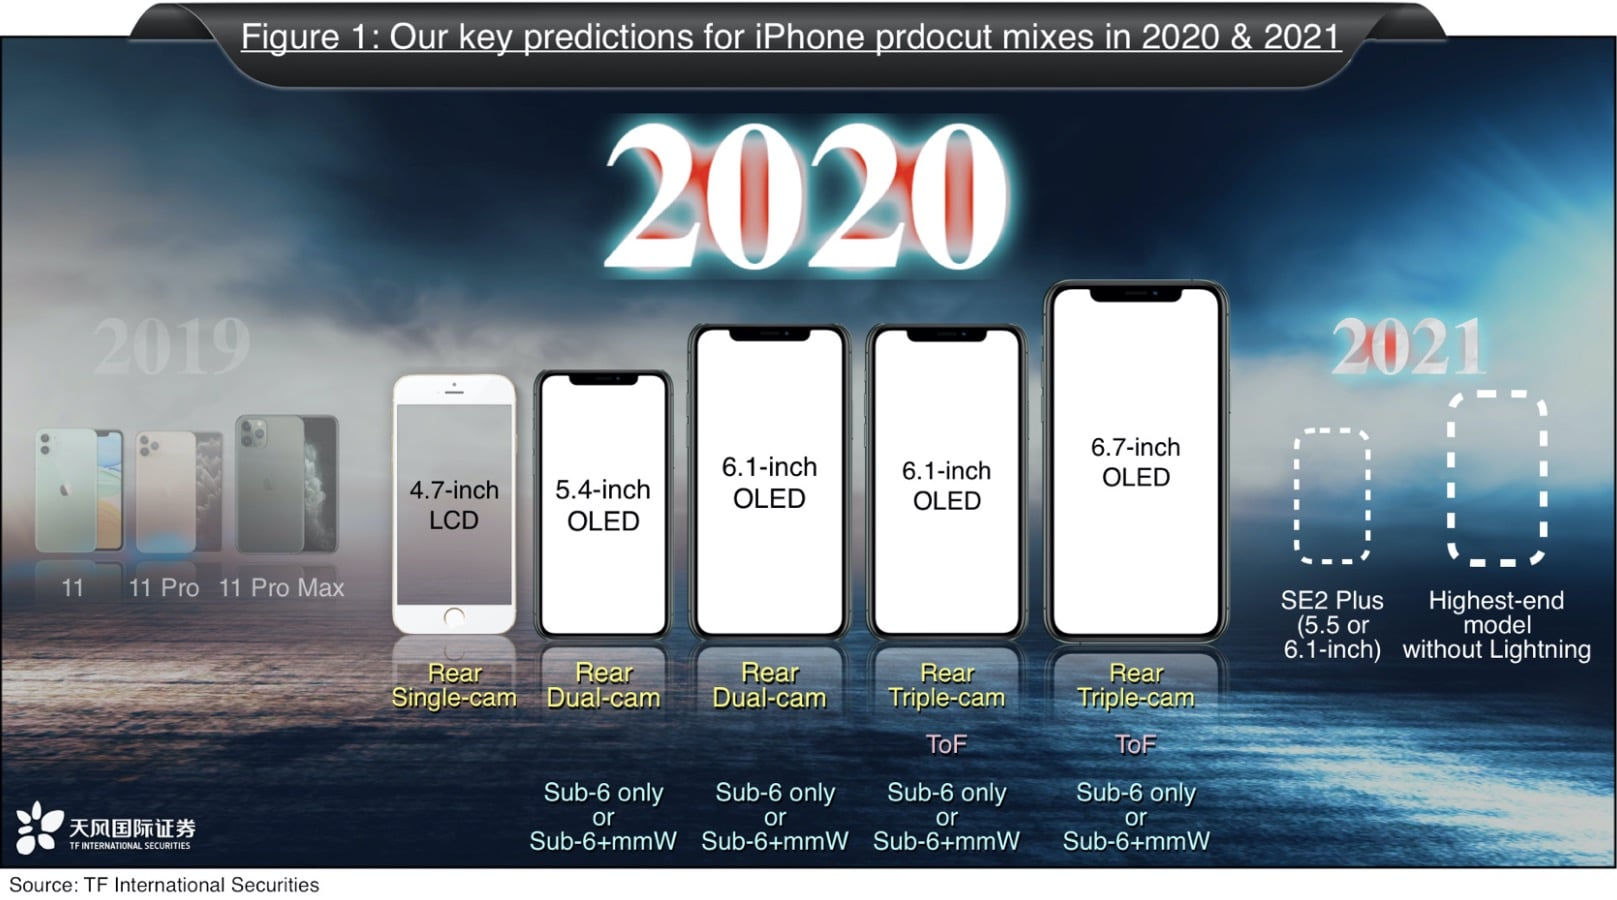 IPhone prognoosib aastateks 2020 ja 2021